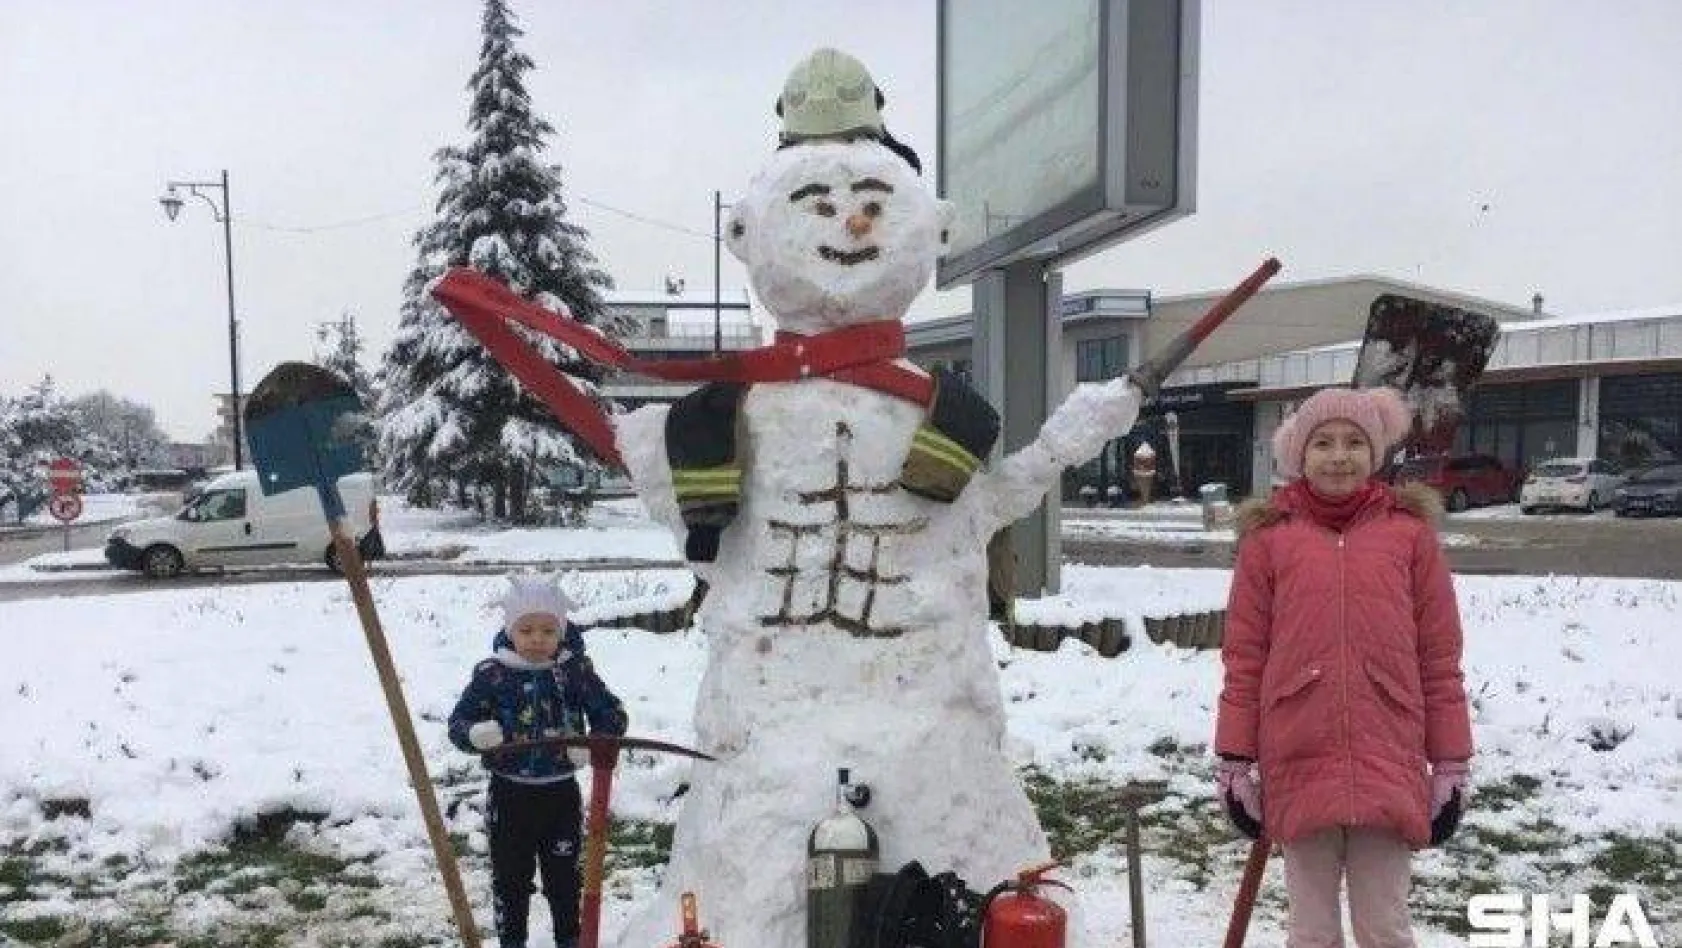 Bursa'da kardan itfaiyeye yoğun ilgi